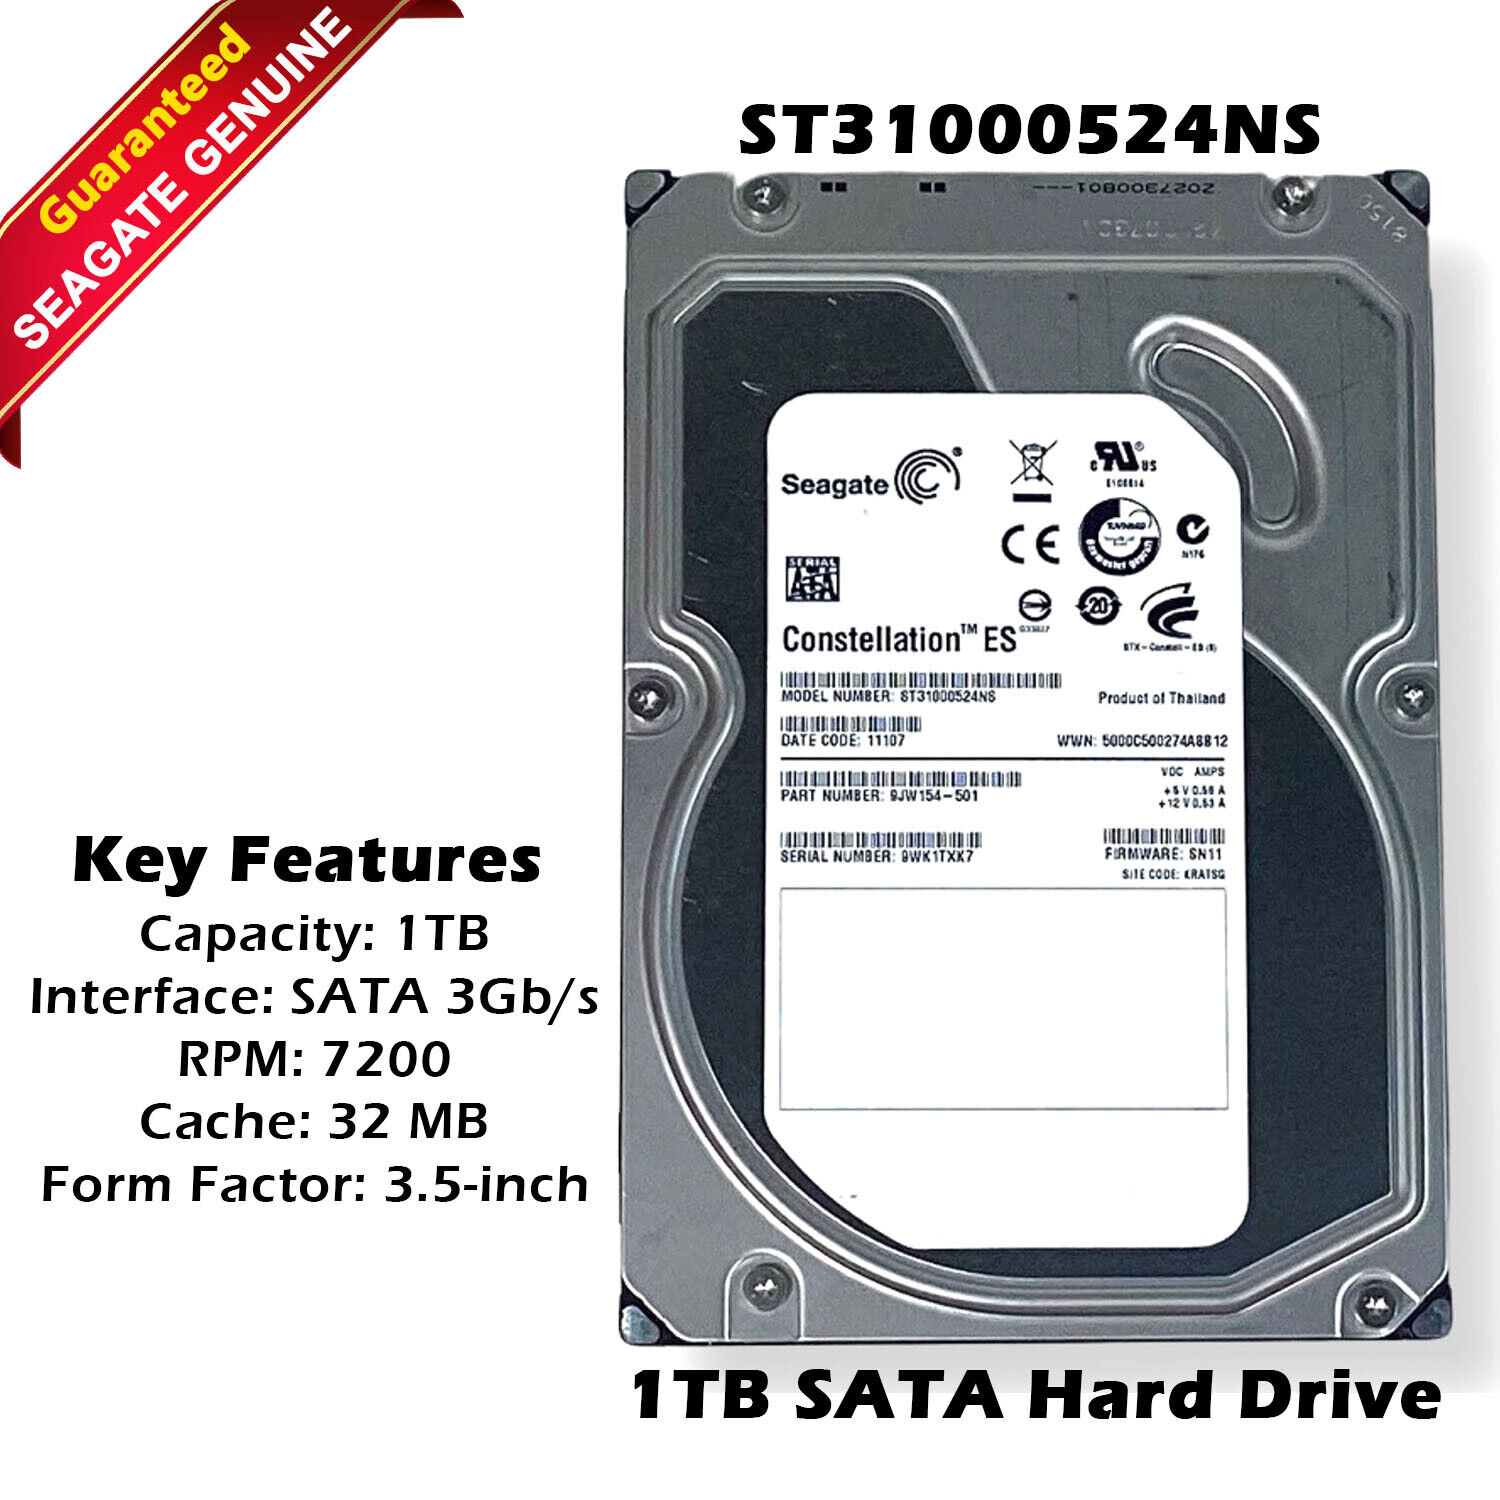 Seagate Constellation ES ST31000524NS 1TB 7200RPM SATA Hard Disk Drive